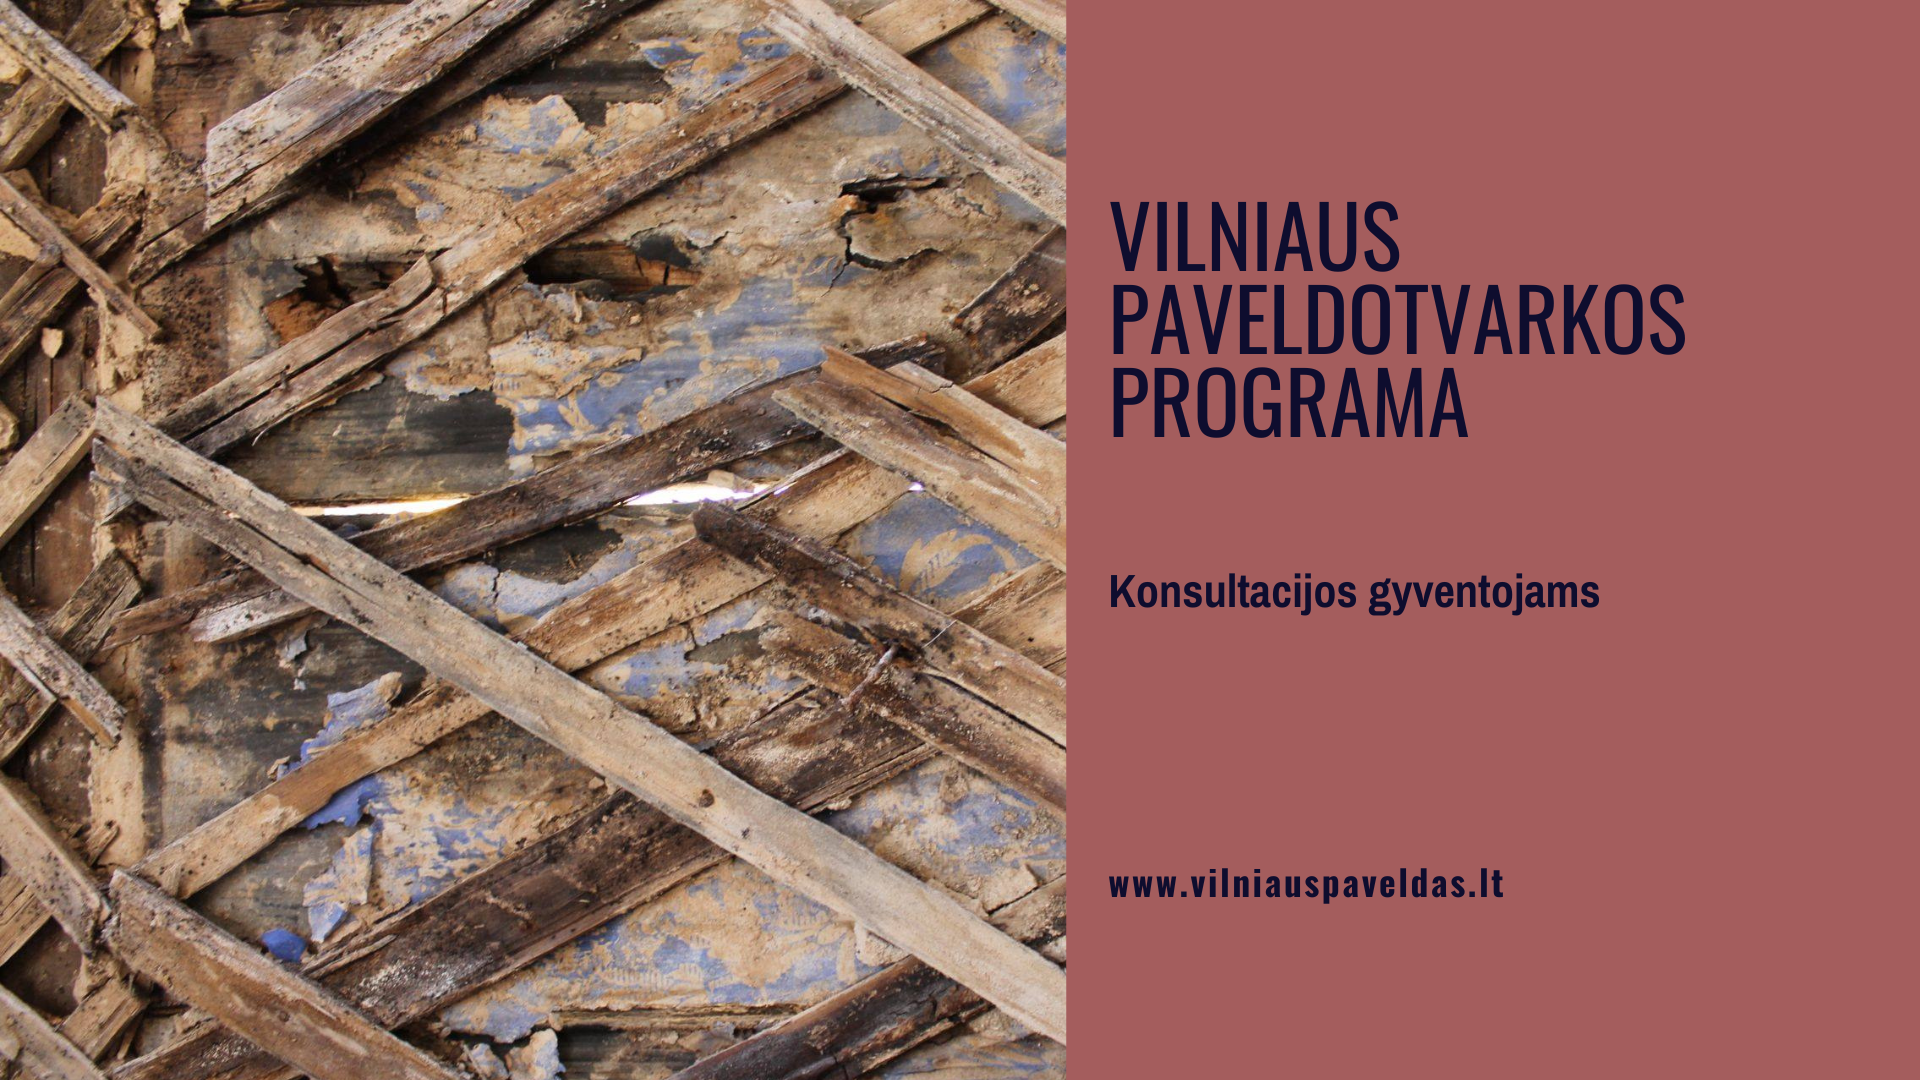 Vilniaus paveldotvarkos programa. Konsultacija gyventojams